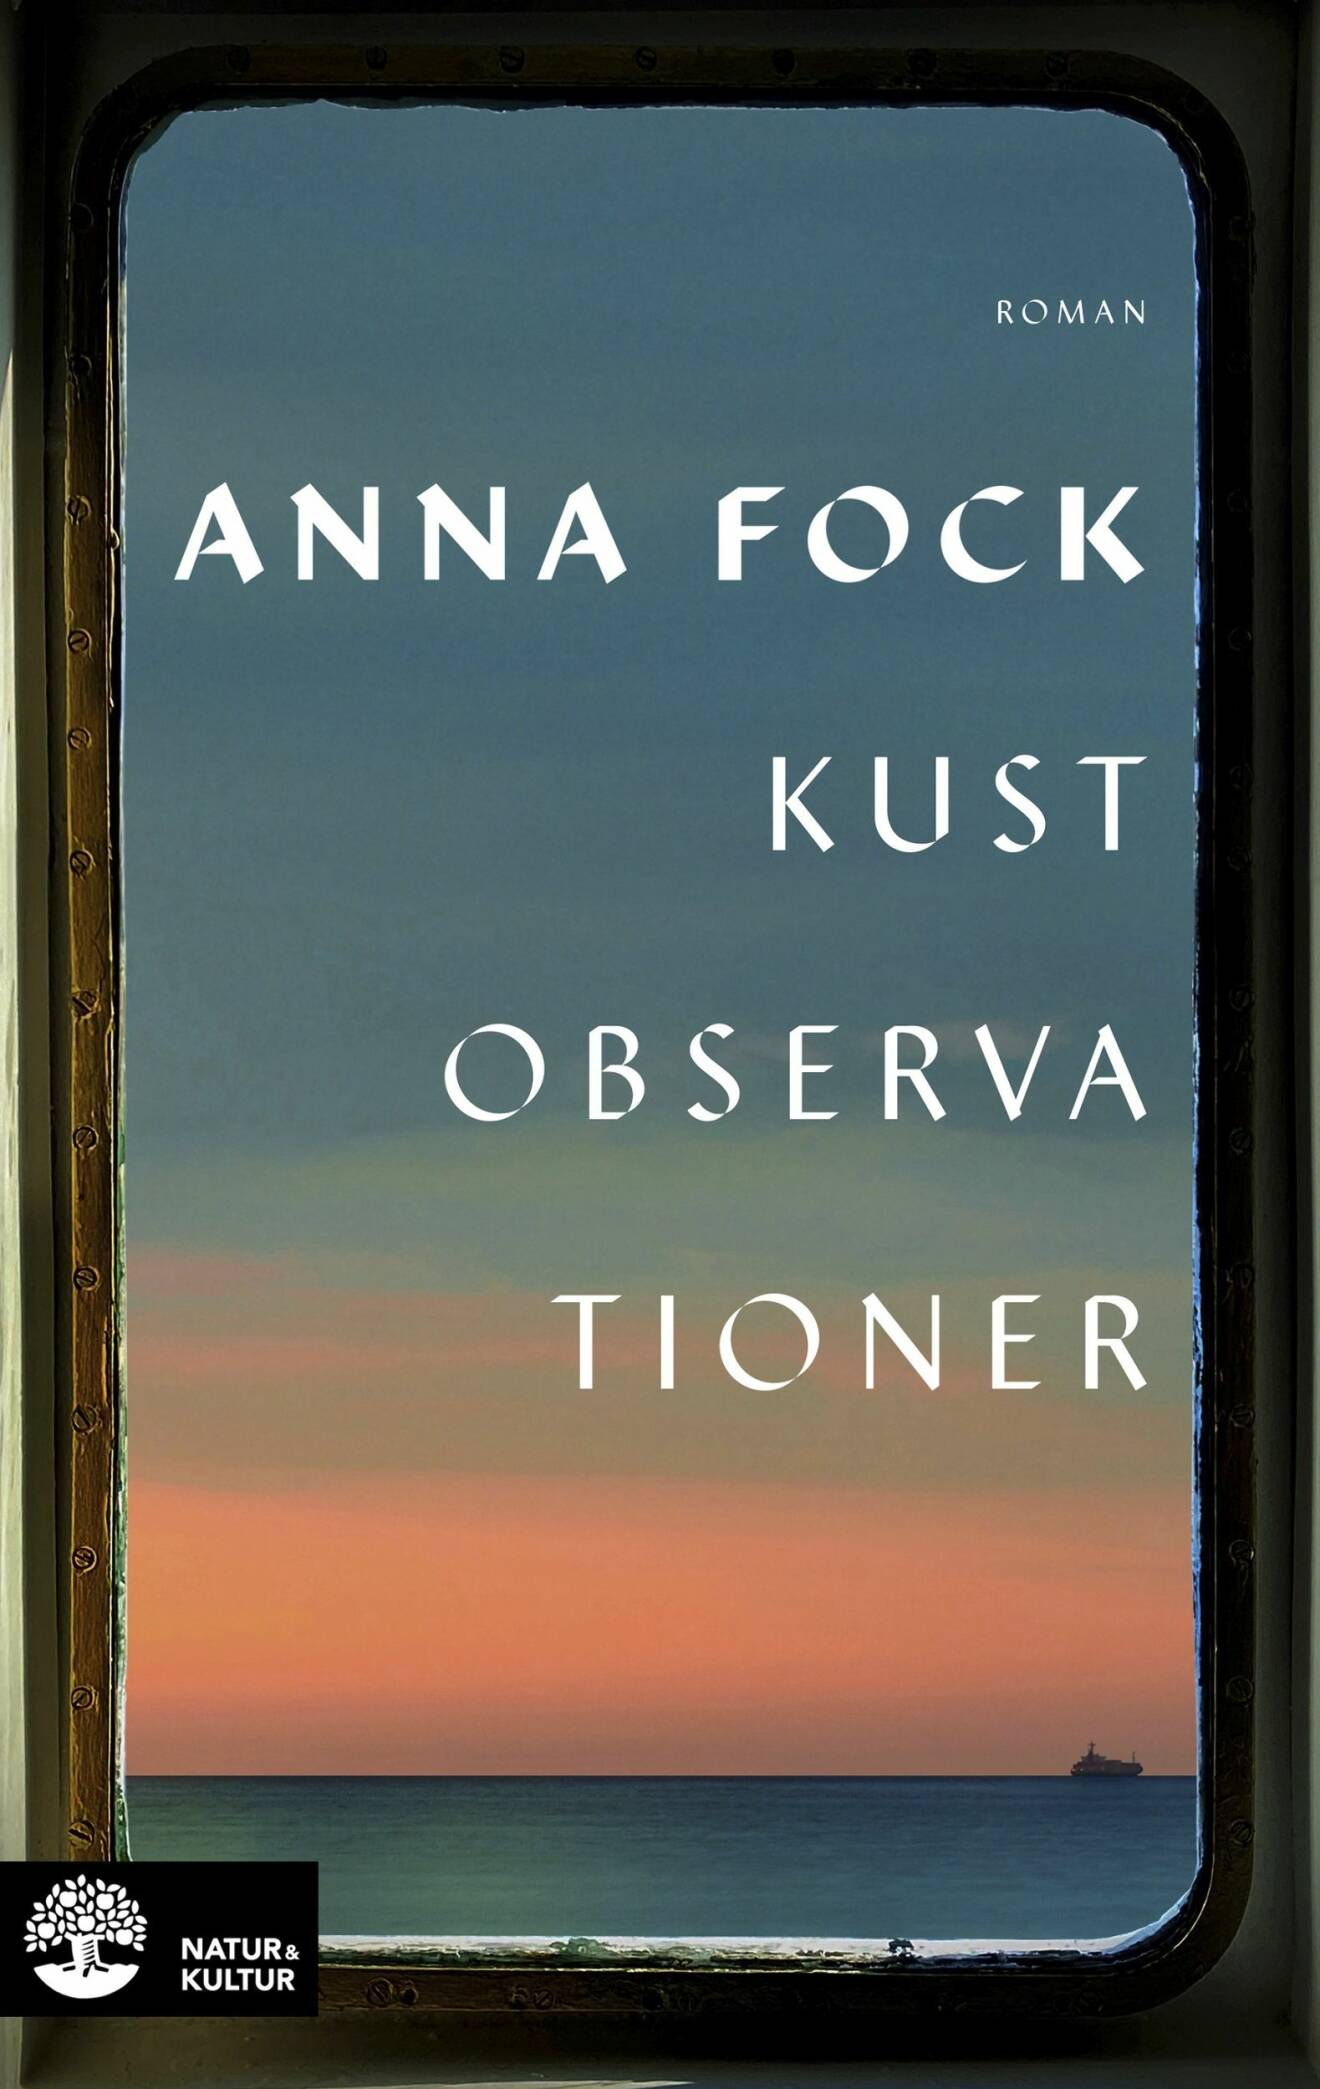 Bokomslag Kustobservationer av Anna Fock.